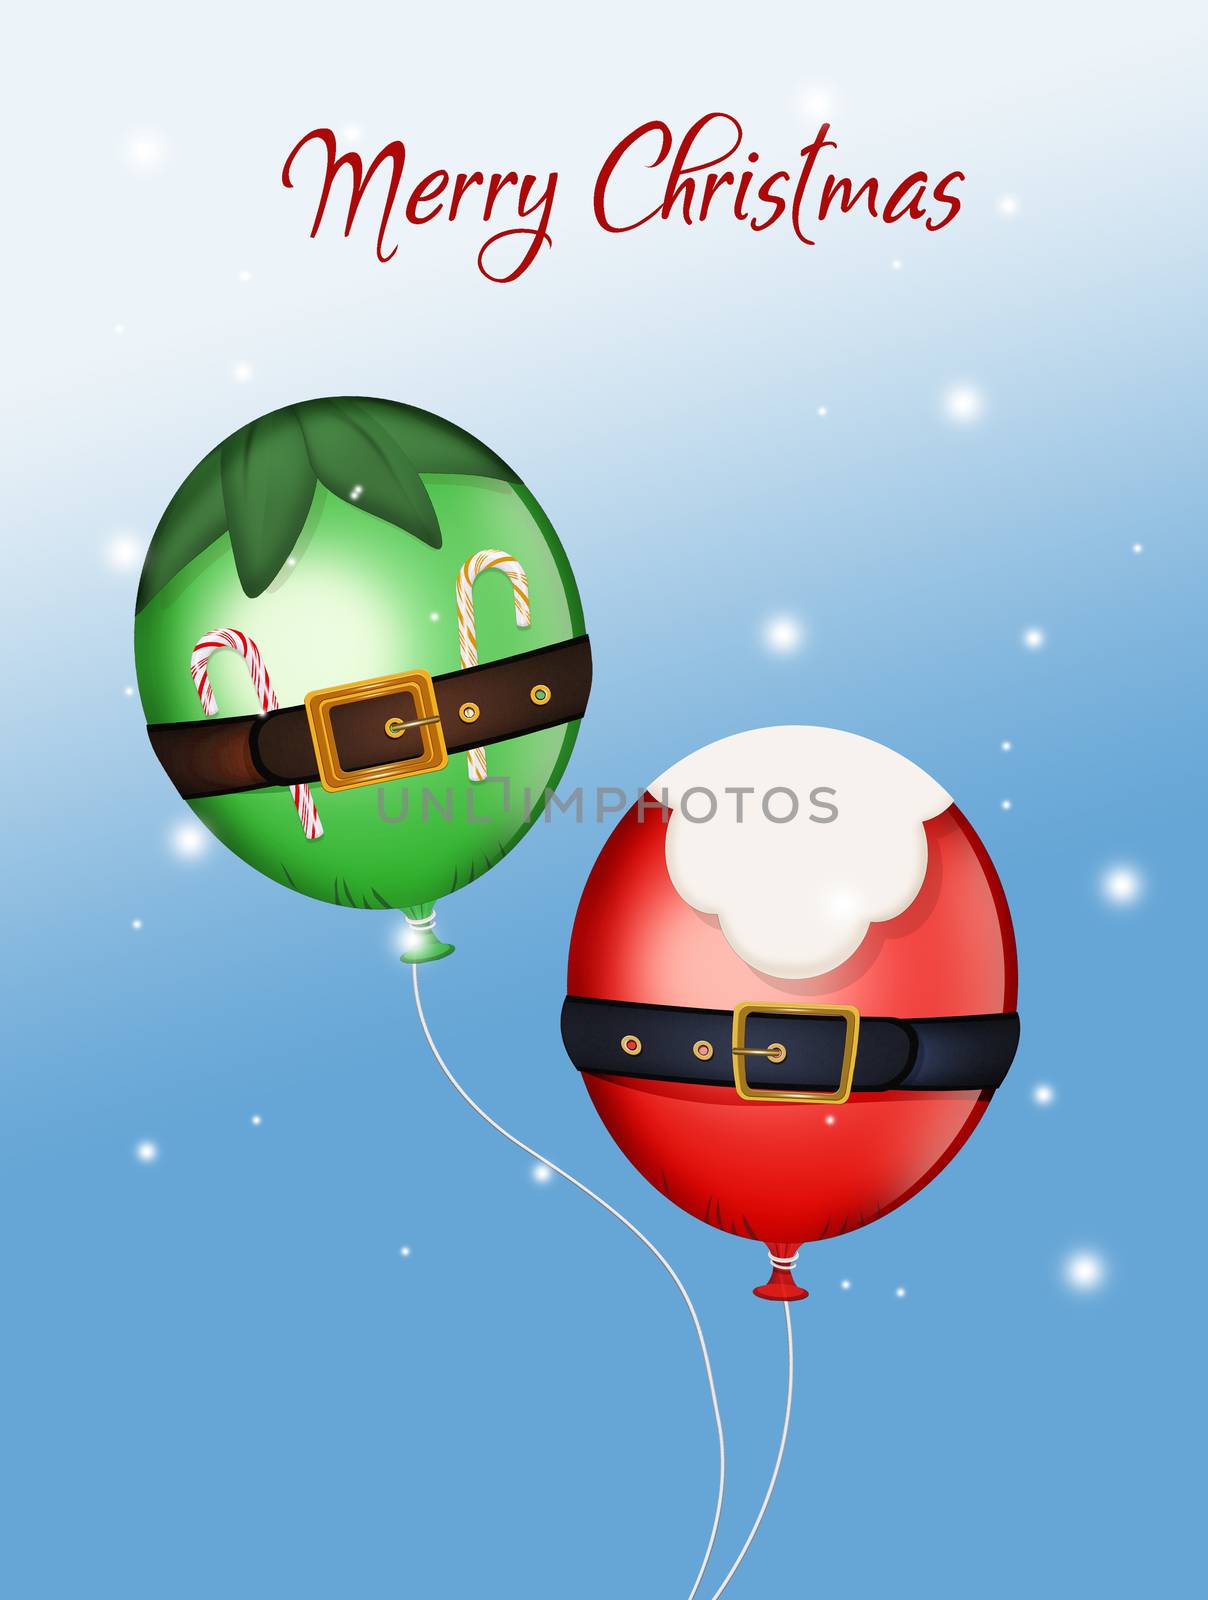 balloons of Santa Claus and elf by adrenalina